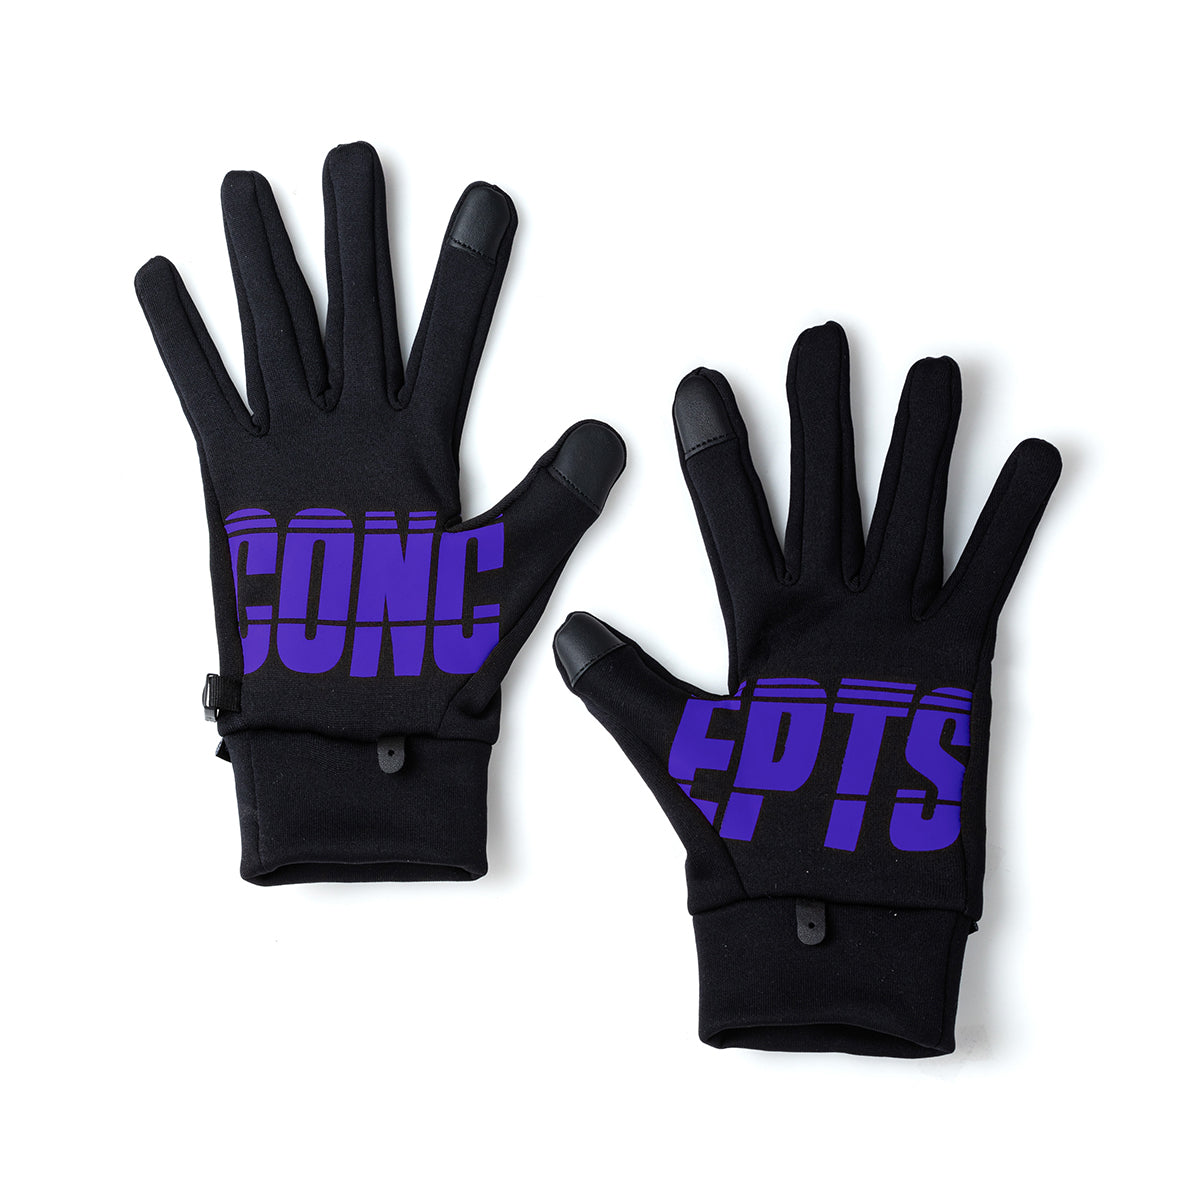 Concpets 3M Polartec Gloves (Purple)